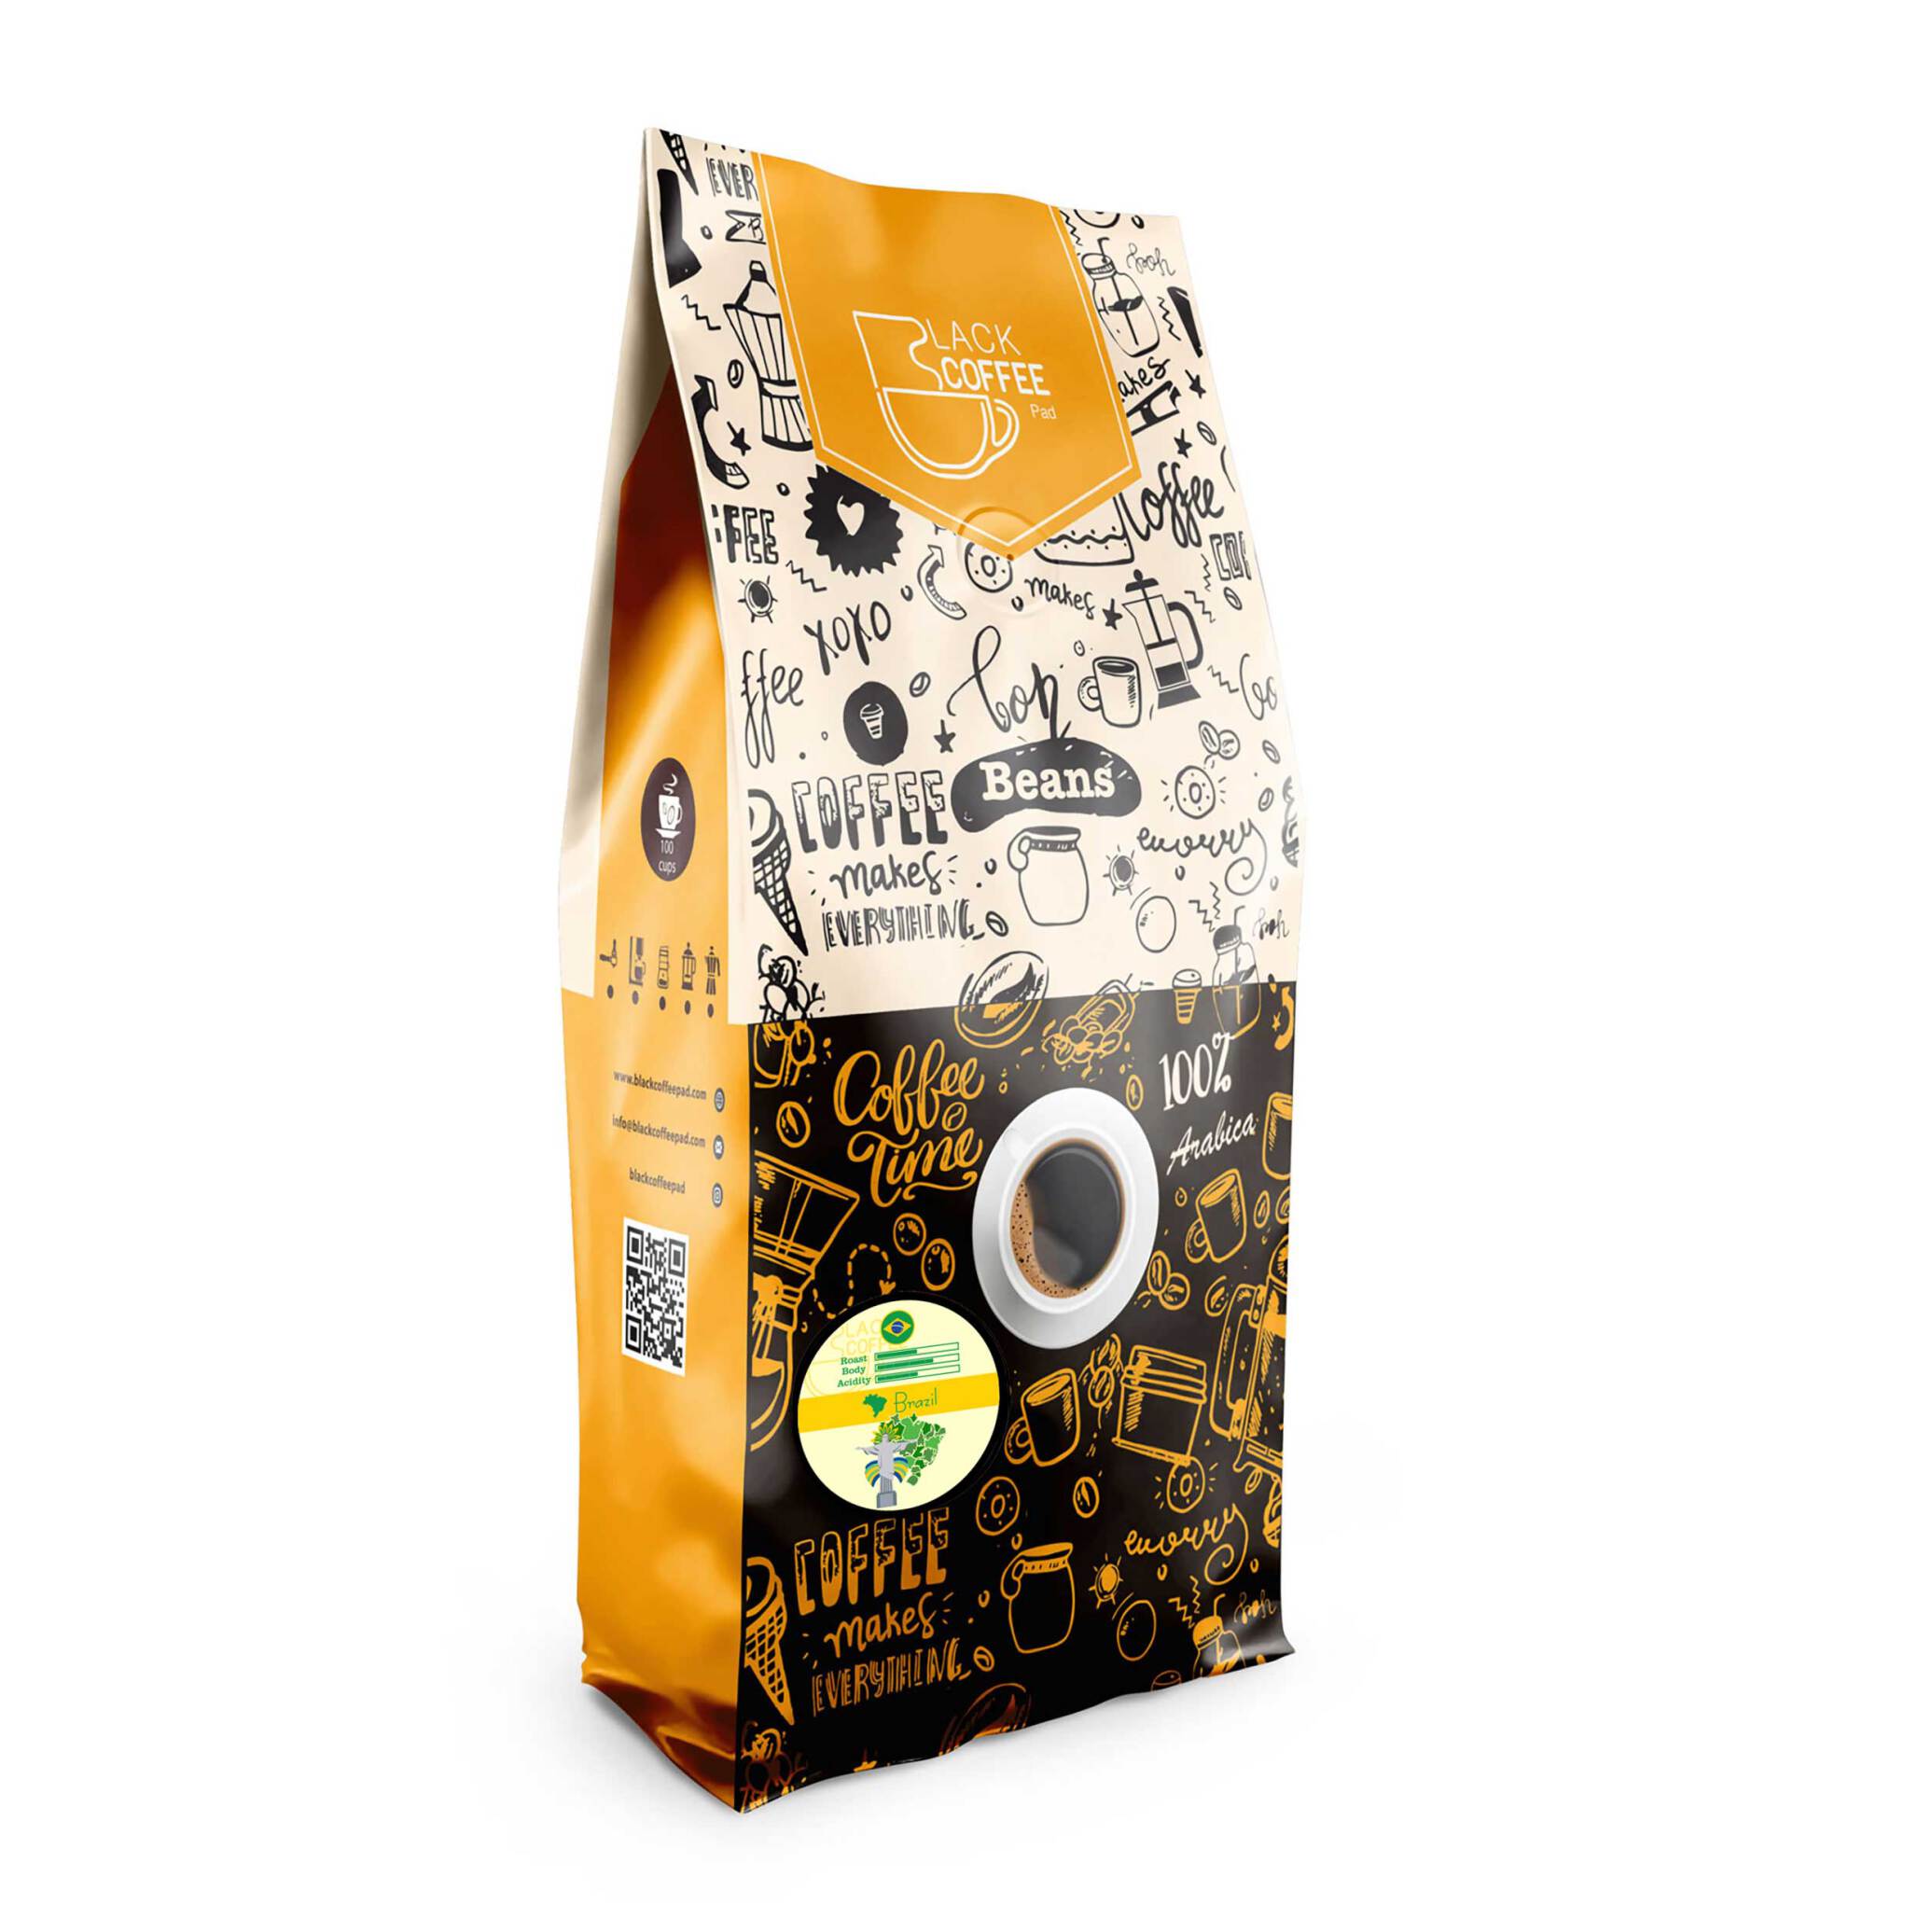  دانه قهوه برزیل | Brasil coffee beans | دانه قهوه | خرید دانه | بلک کافی 